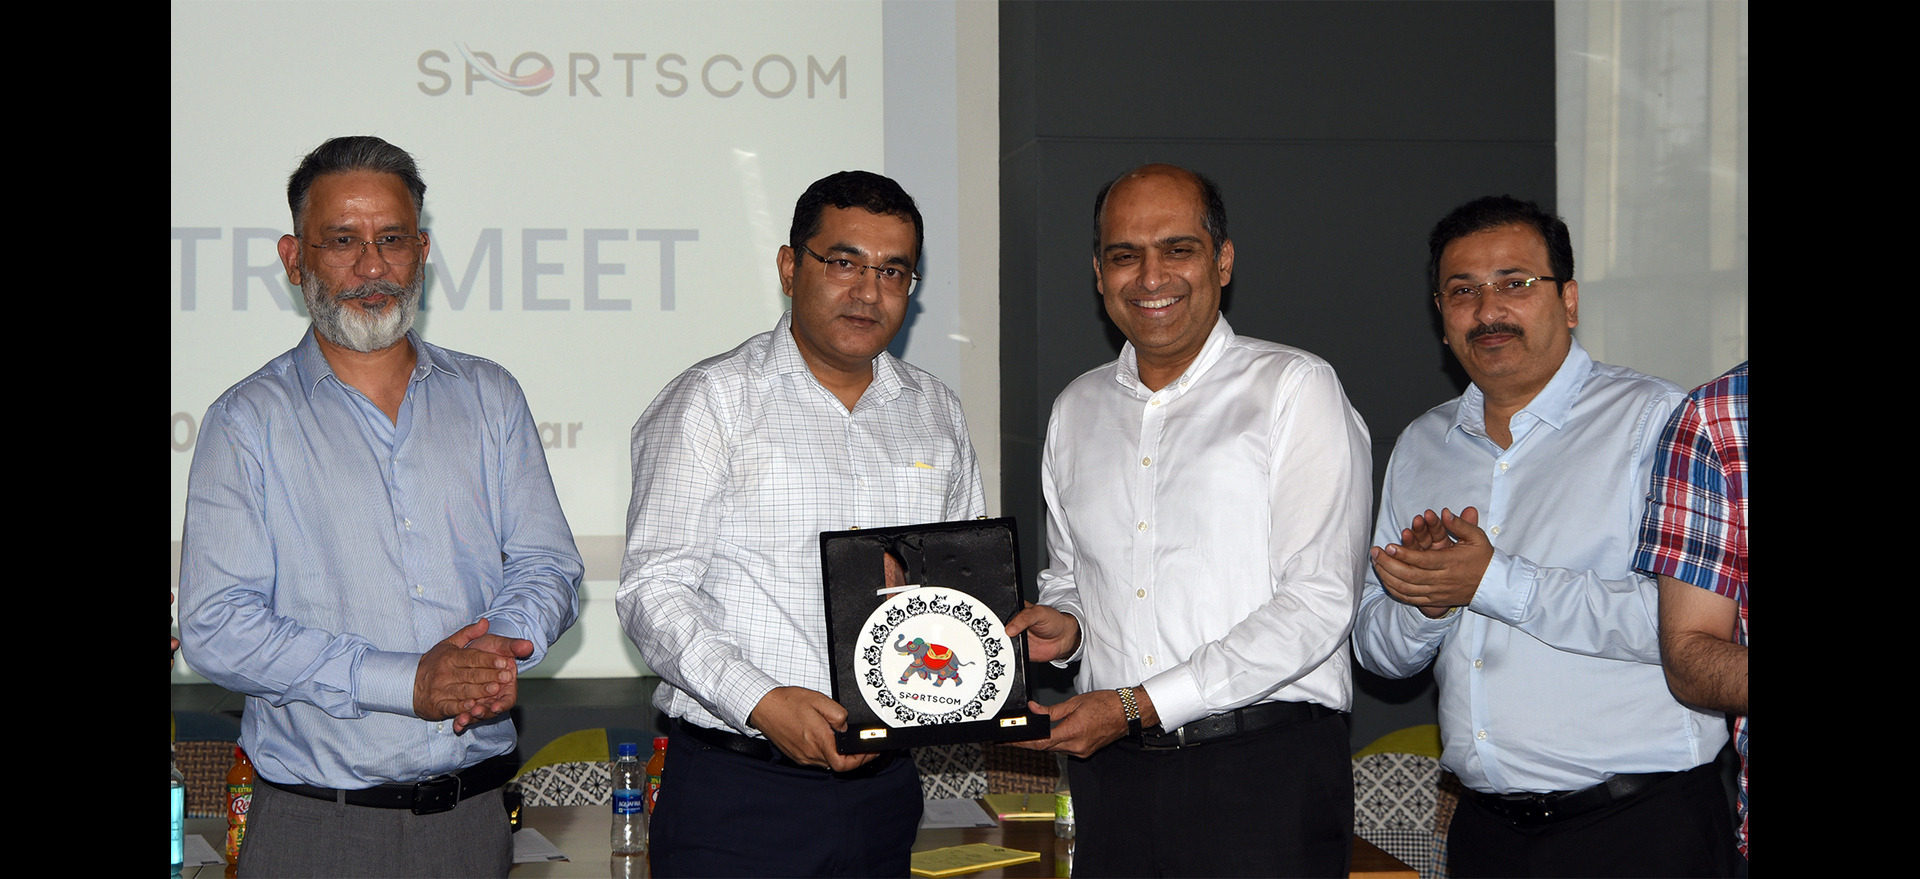 Sportscom Industry Meet, Jalandhar